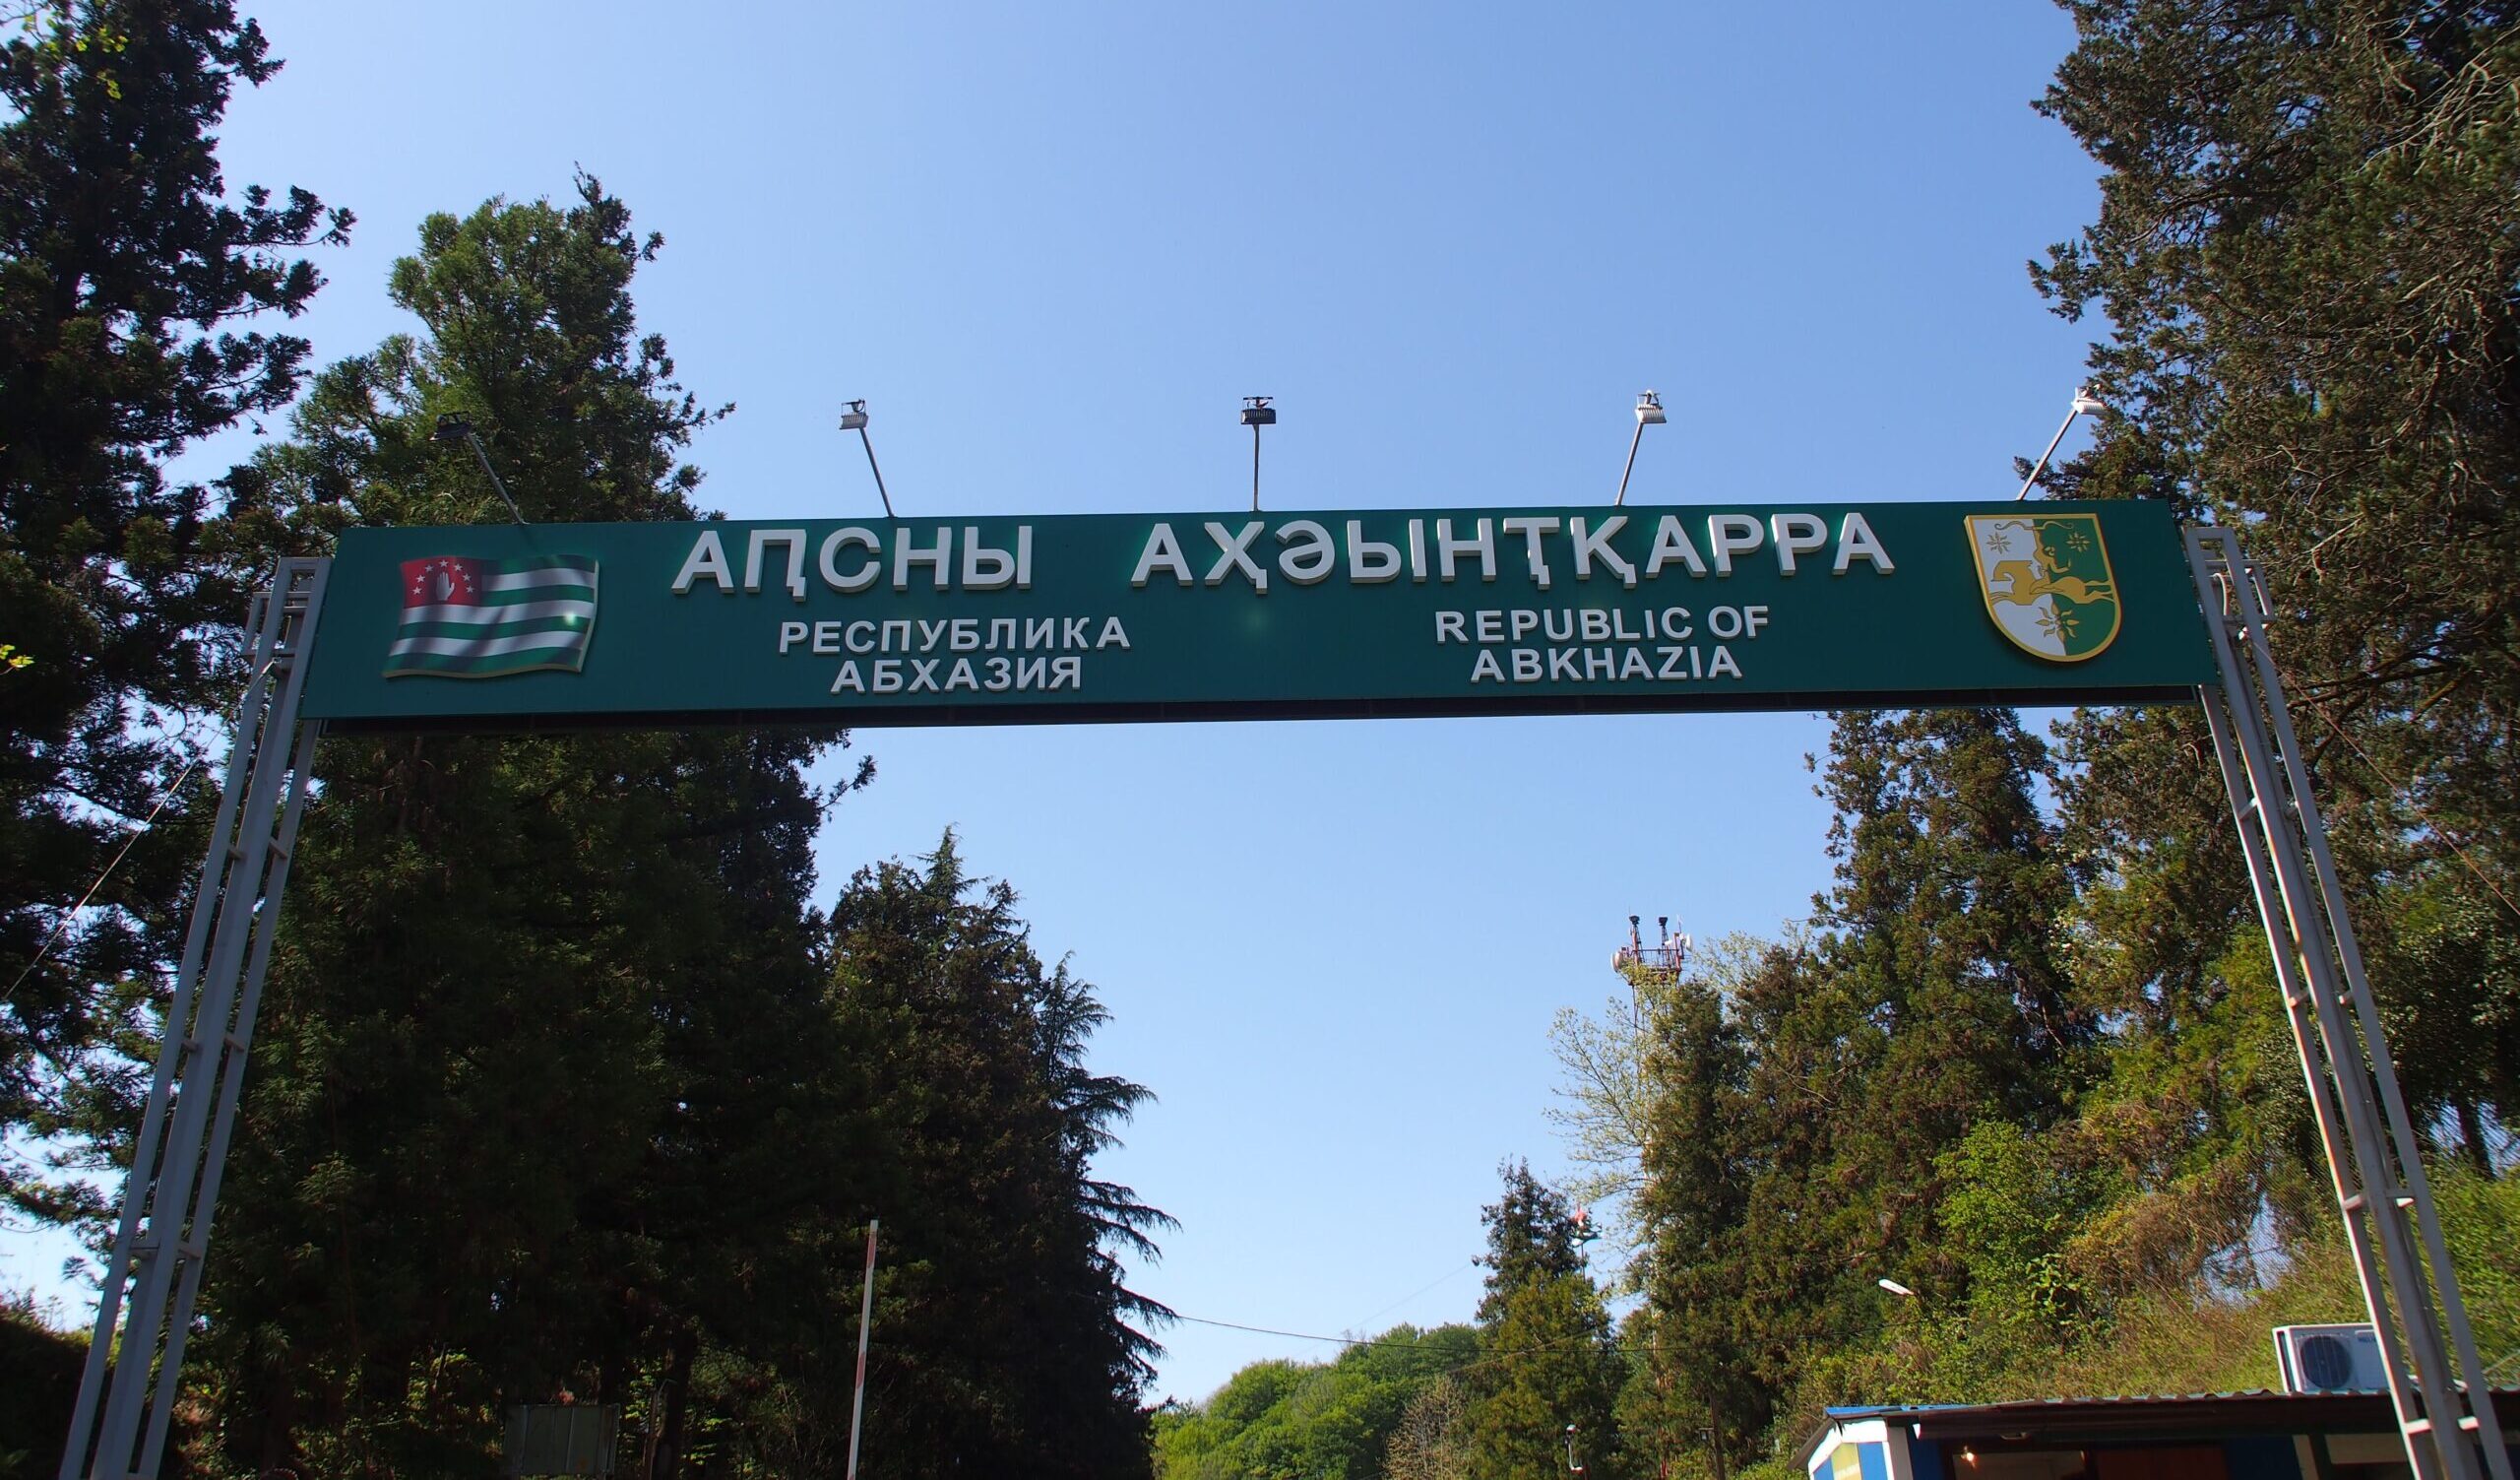 Abkhazia, breve storia della regione separatista che ha lasciato la Georgia ed è alleata di Mosca